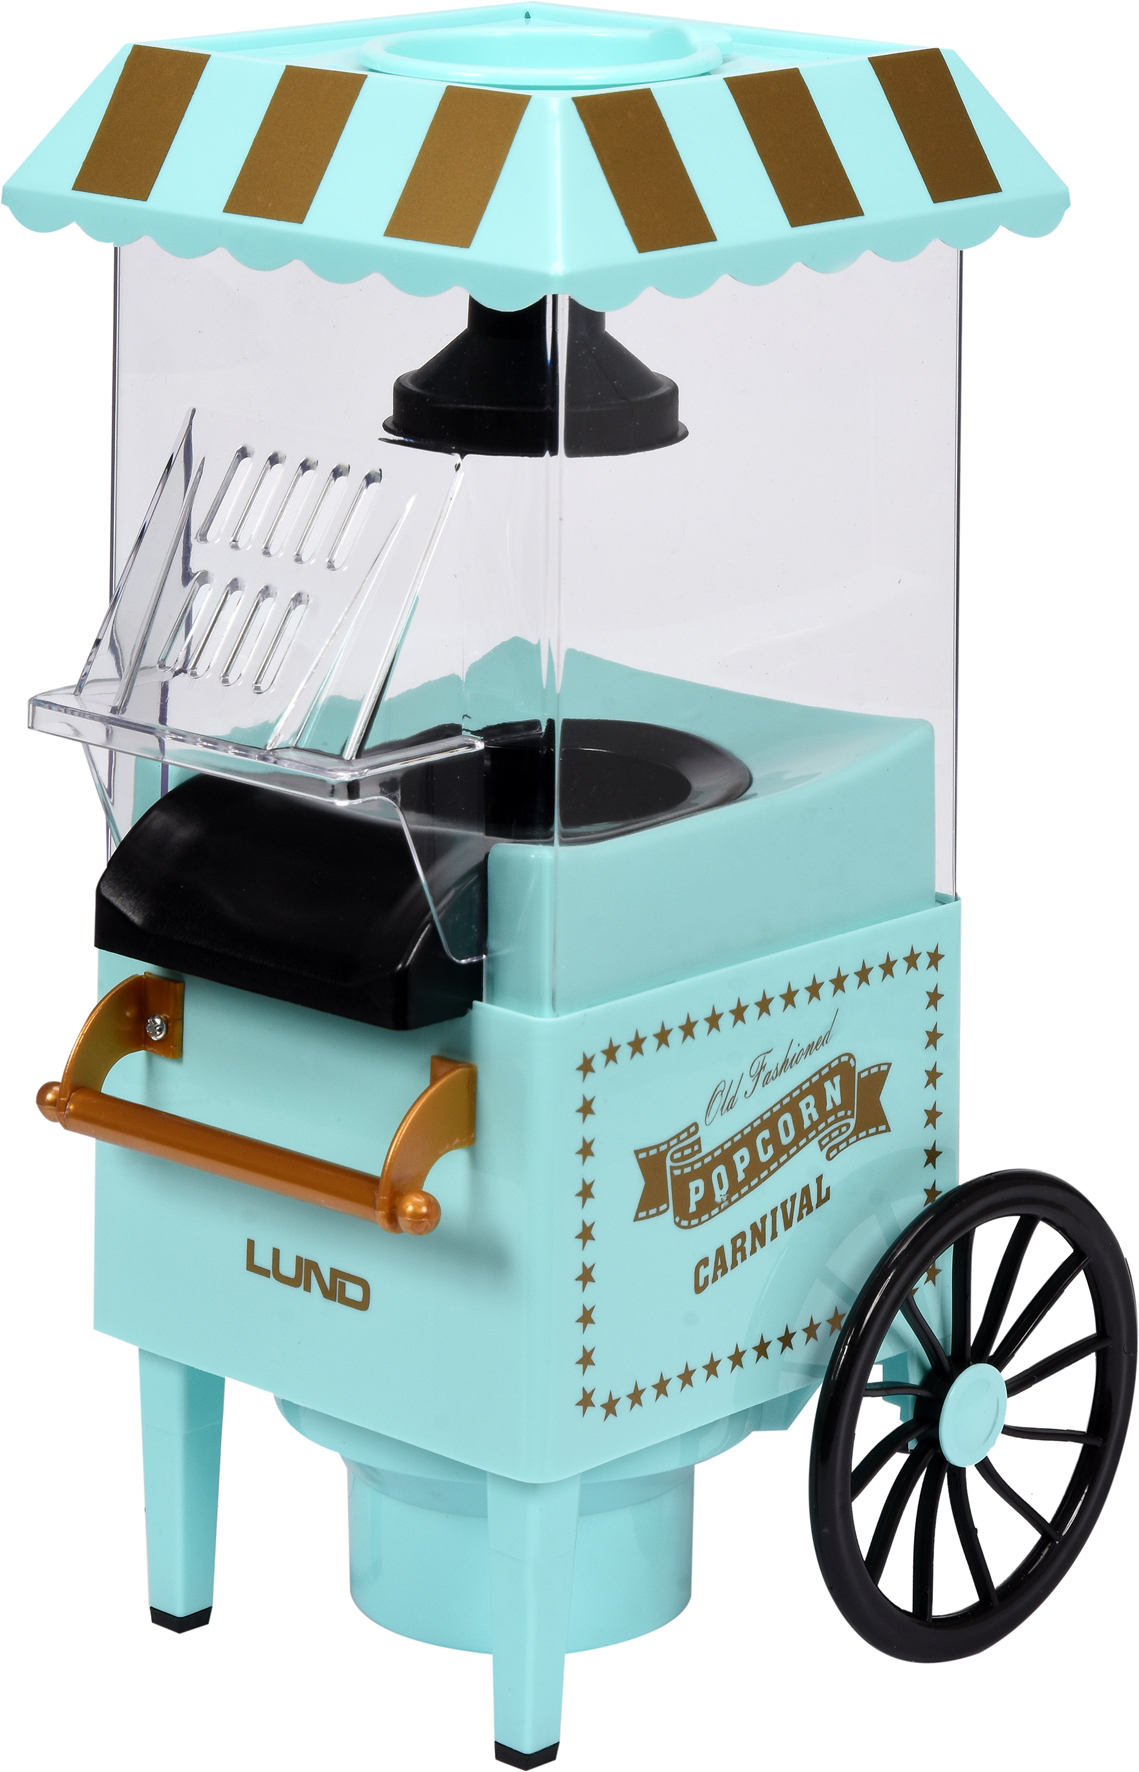 Stroj na popcorn - vozík 1200W LUND TO-68260 + Dárek, servis bez starostí v hodnotě 300Kč